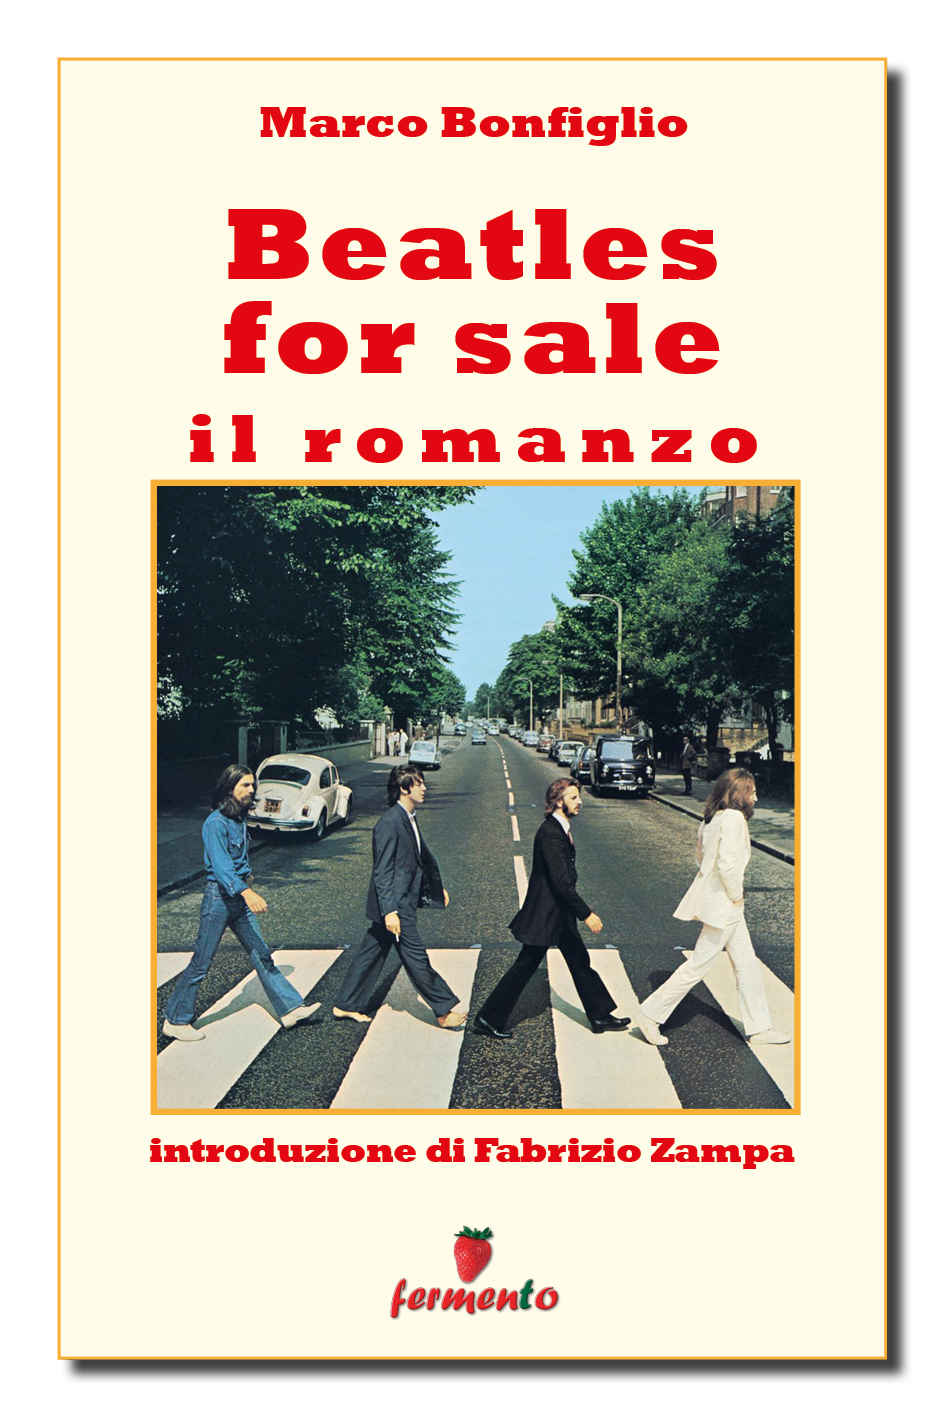 Beatles for Sale romanzo ebook Bonfiglio Fermento